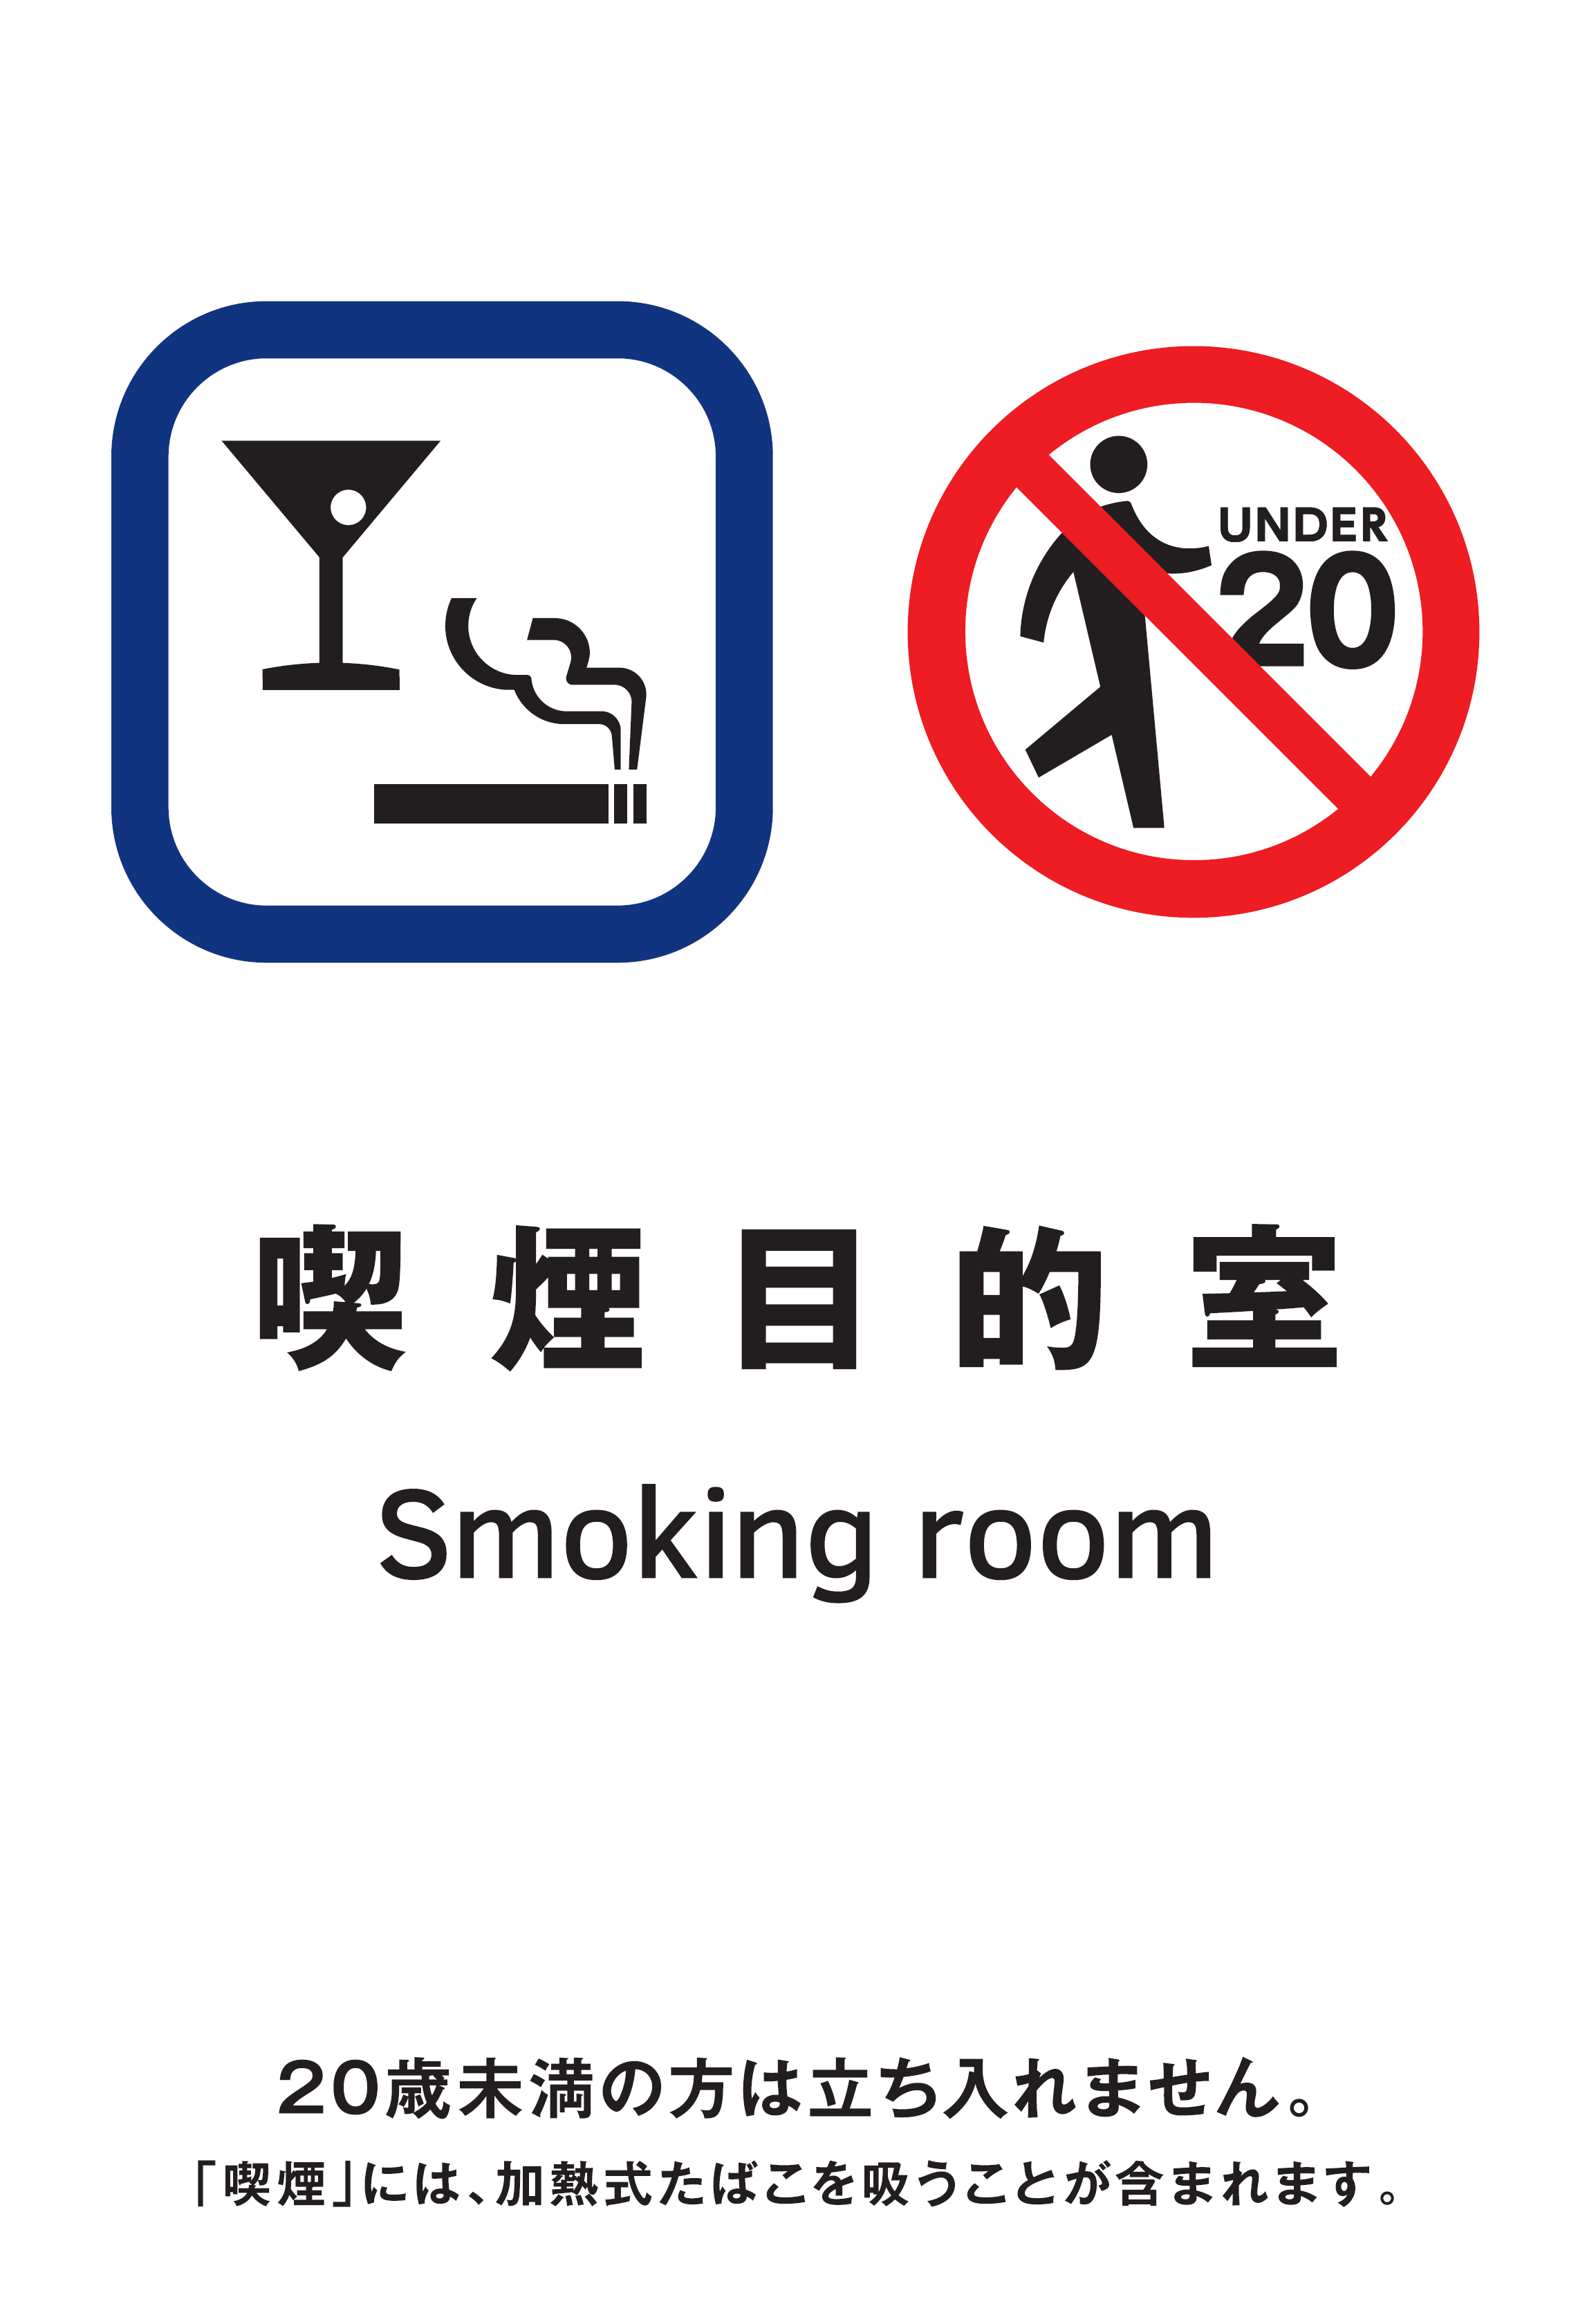 喫煙目的室の標識